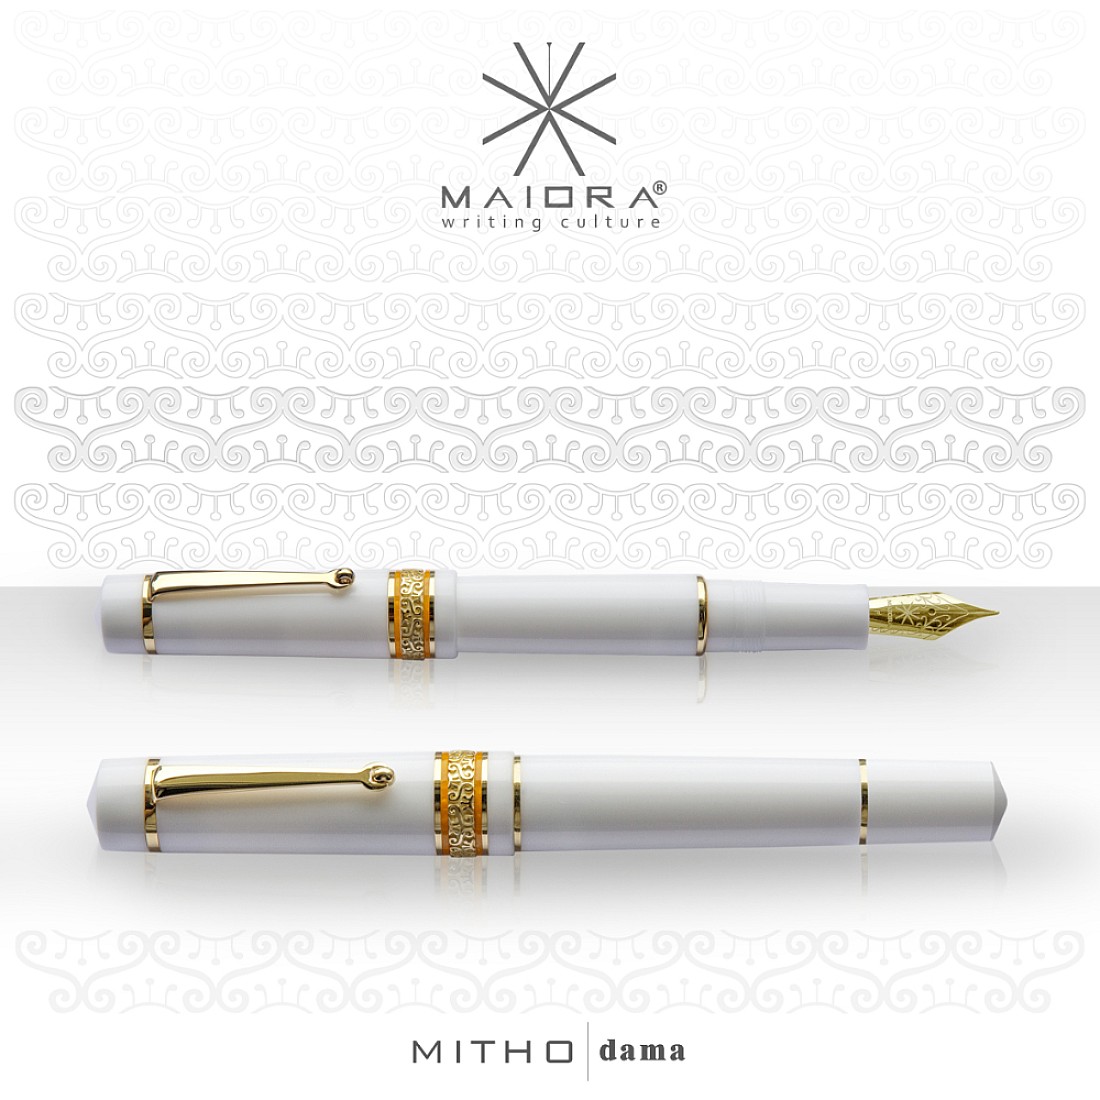 Maiora Mitho Dama (Old Lady) Fountain pen